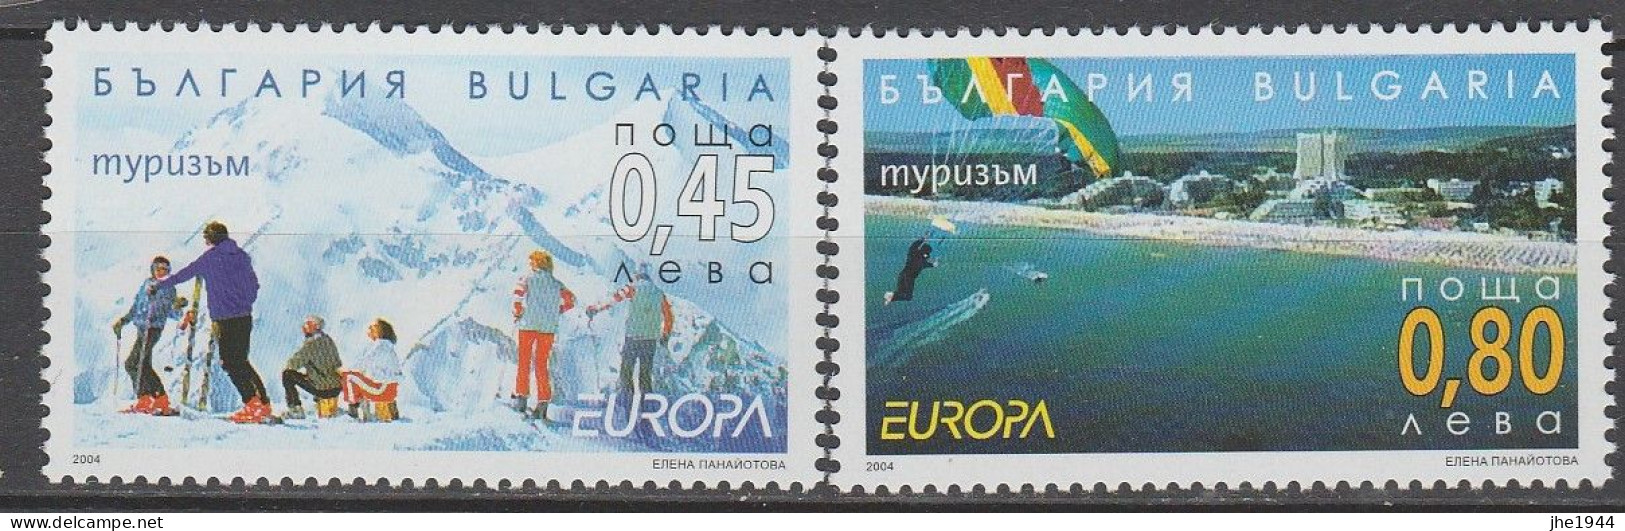 Europa 2004 Vacances Voir liste des timbres à vendre **